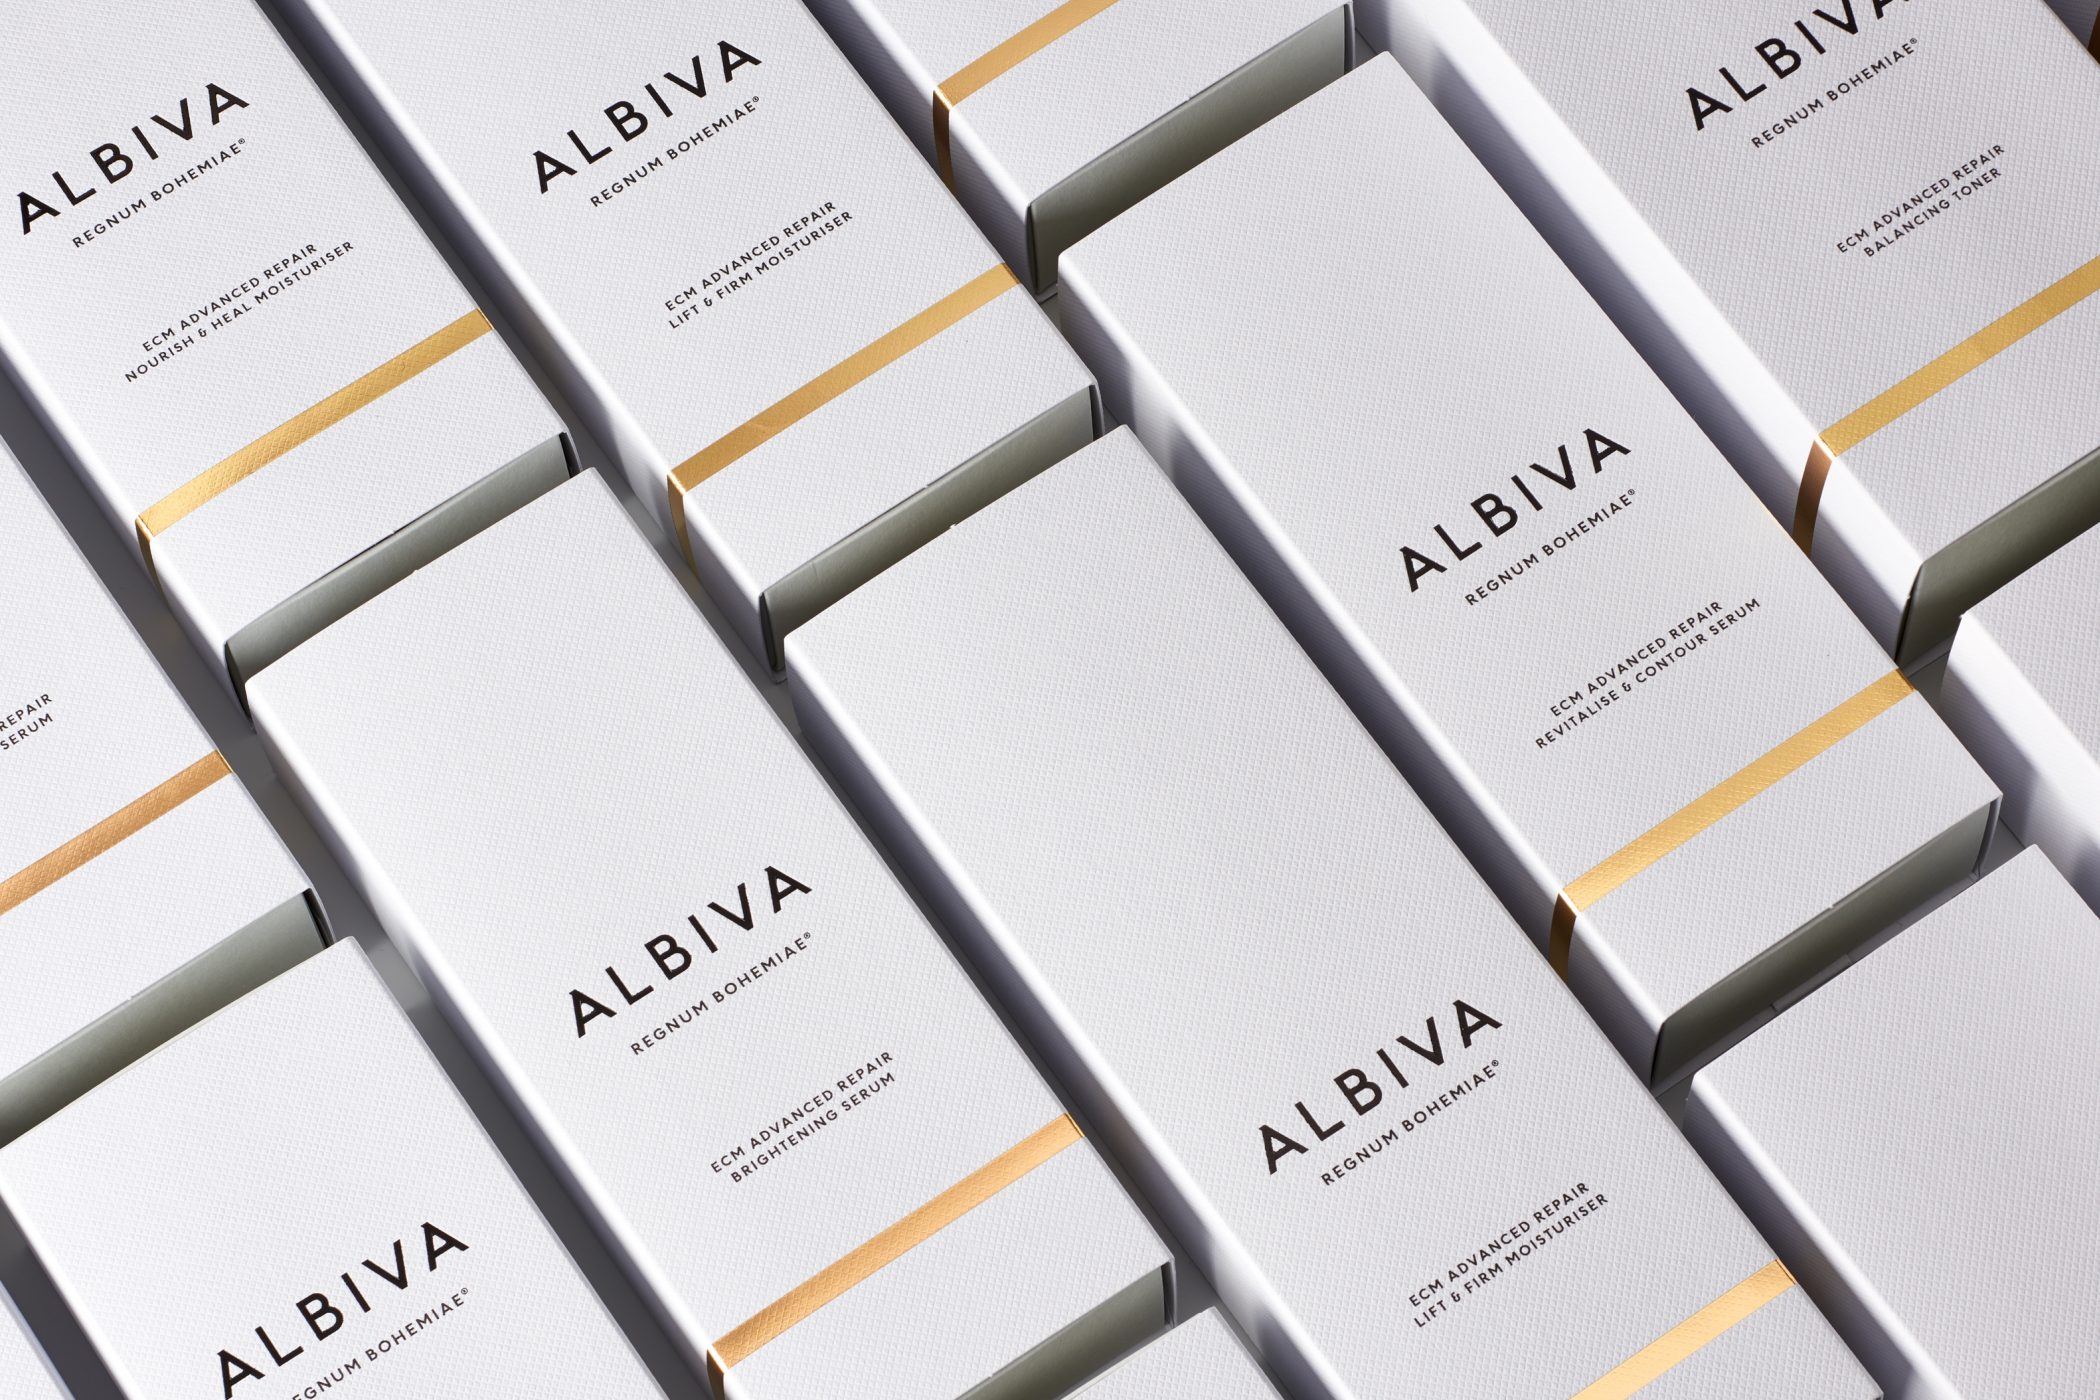 Albiva Packaging 01